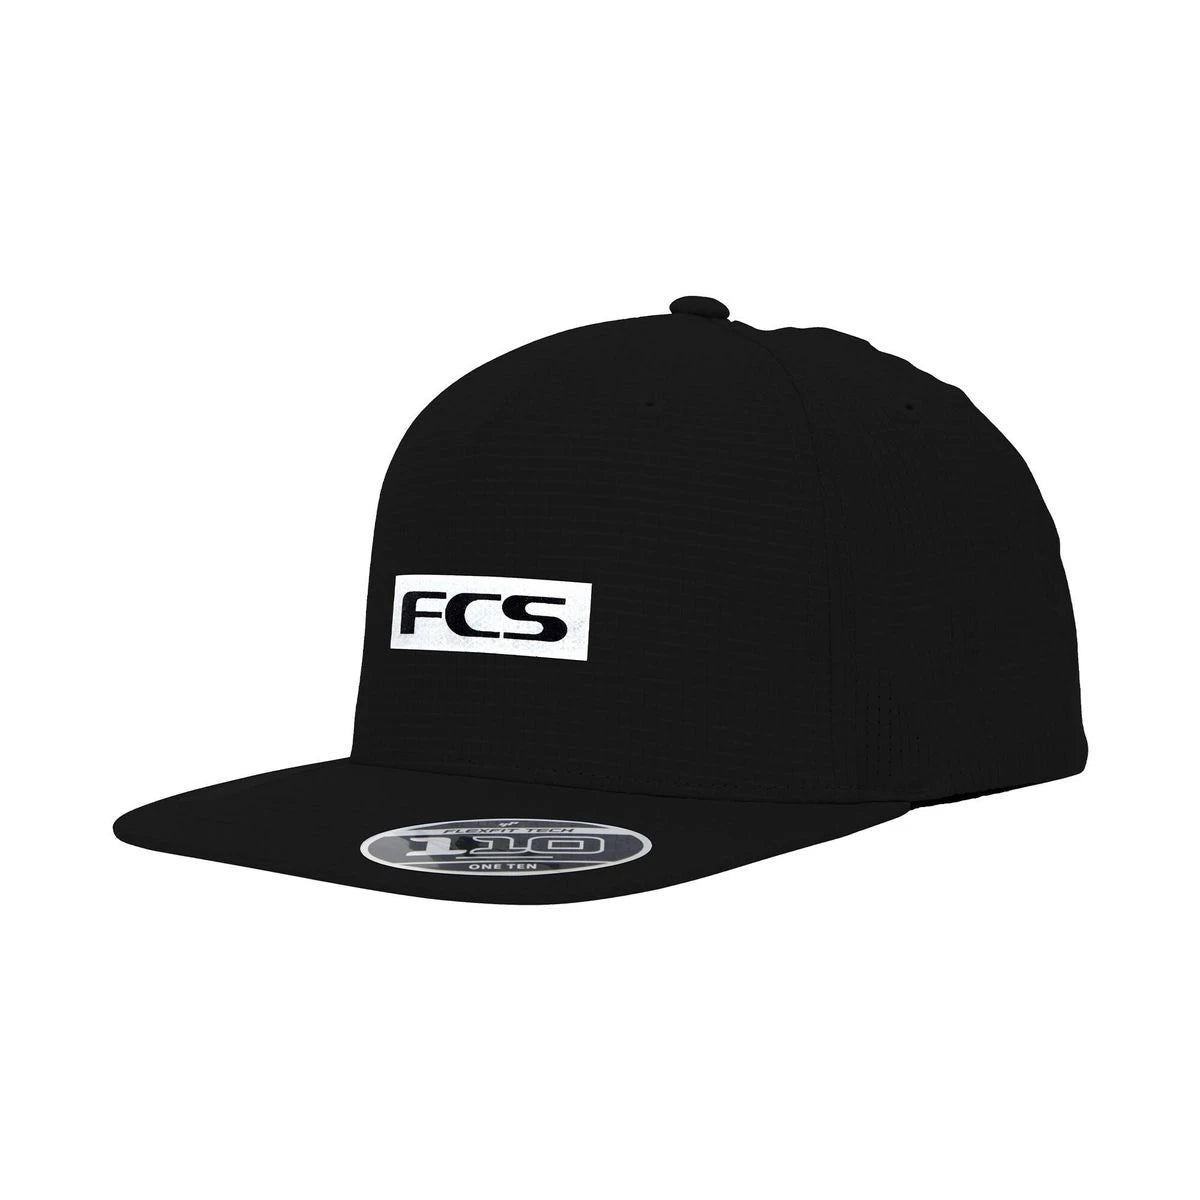 FCS Repel Snapback Cap - Black